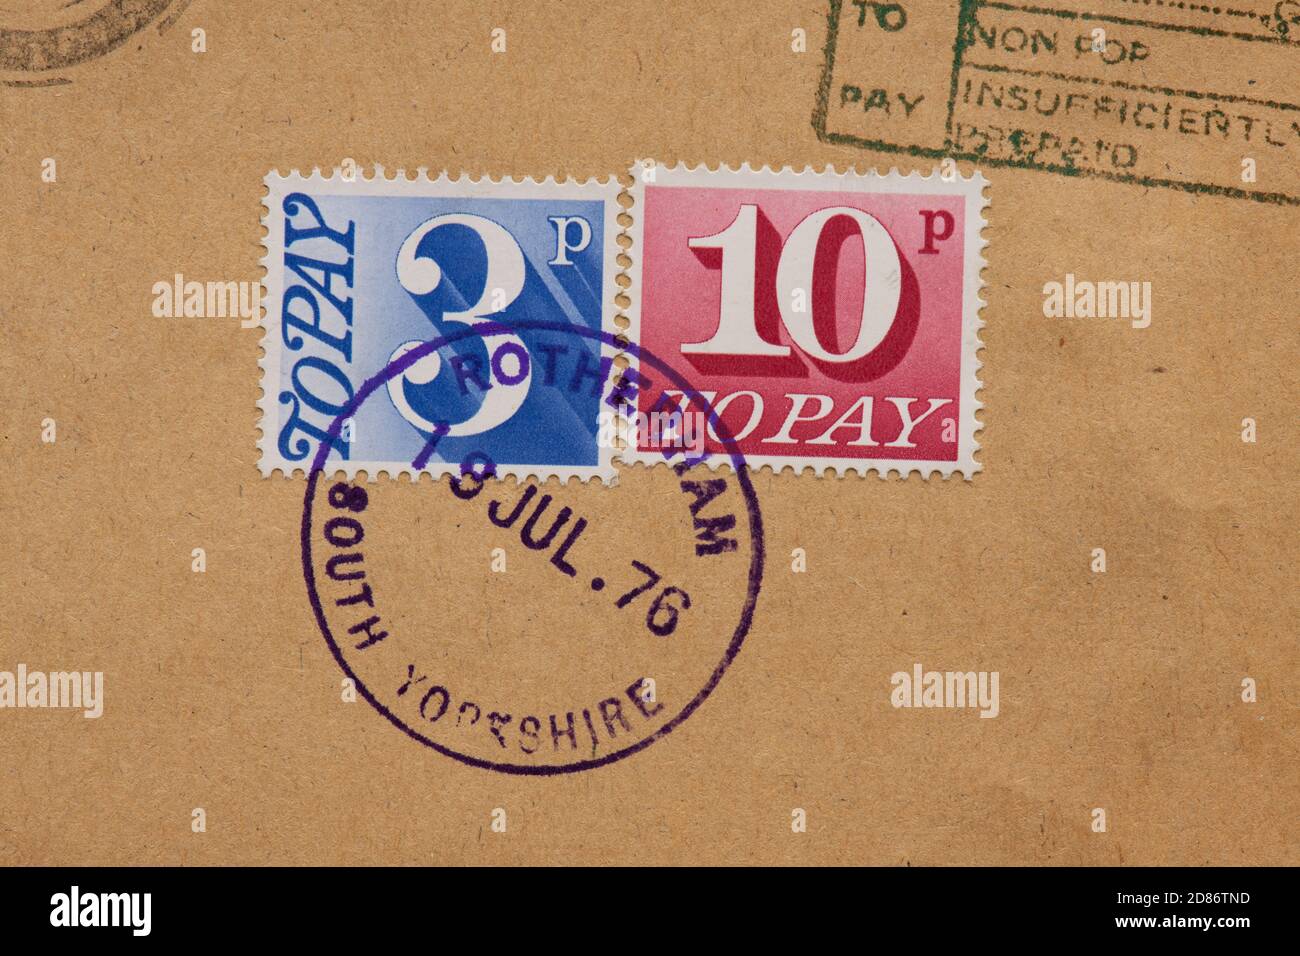 3p y 10p para pagar sellos en el sobre donde el remitente Ha pagado un franqueo insuficiente - franked 1976 - Reino Unido Foto de stock